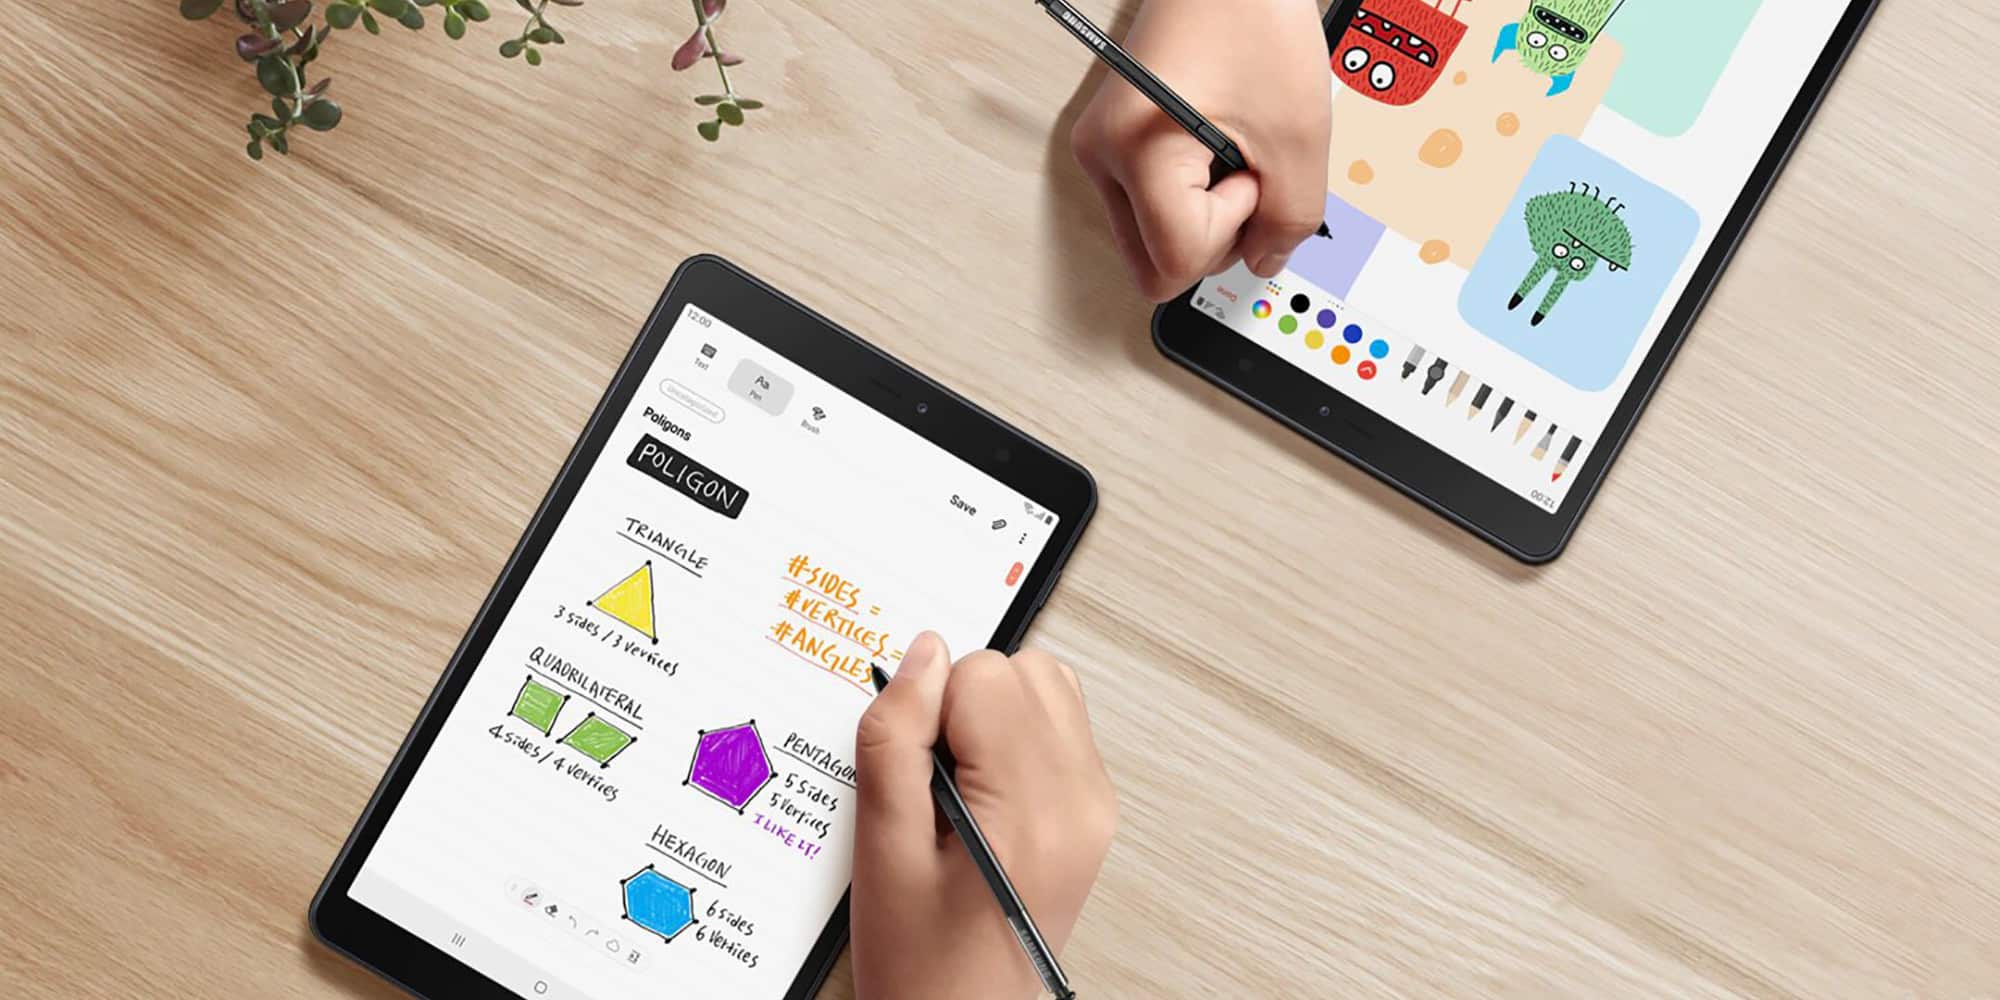 سامسونج تطلق Galaxy Tab A 8.0 مع دعم S Pen